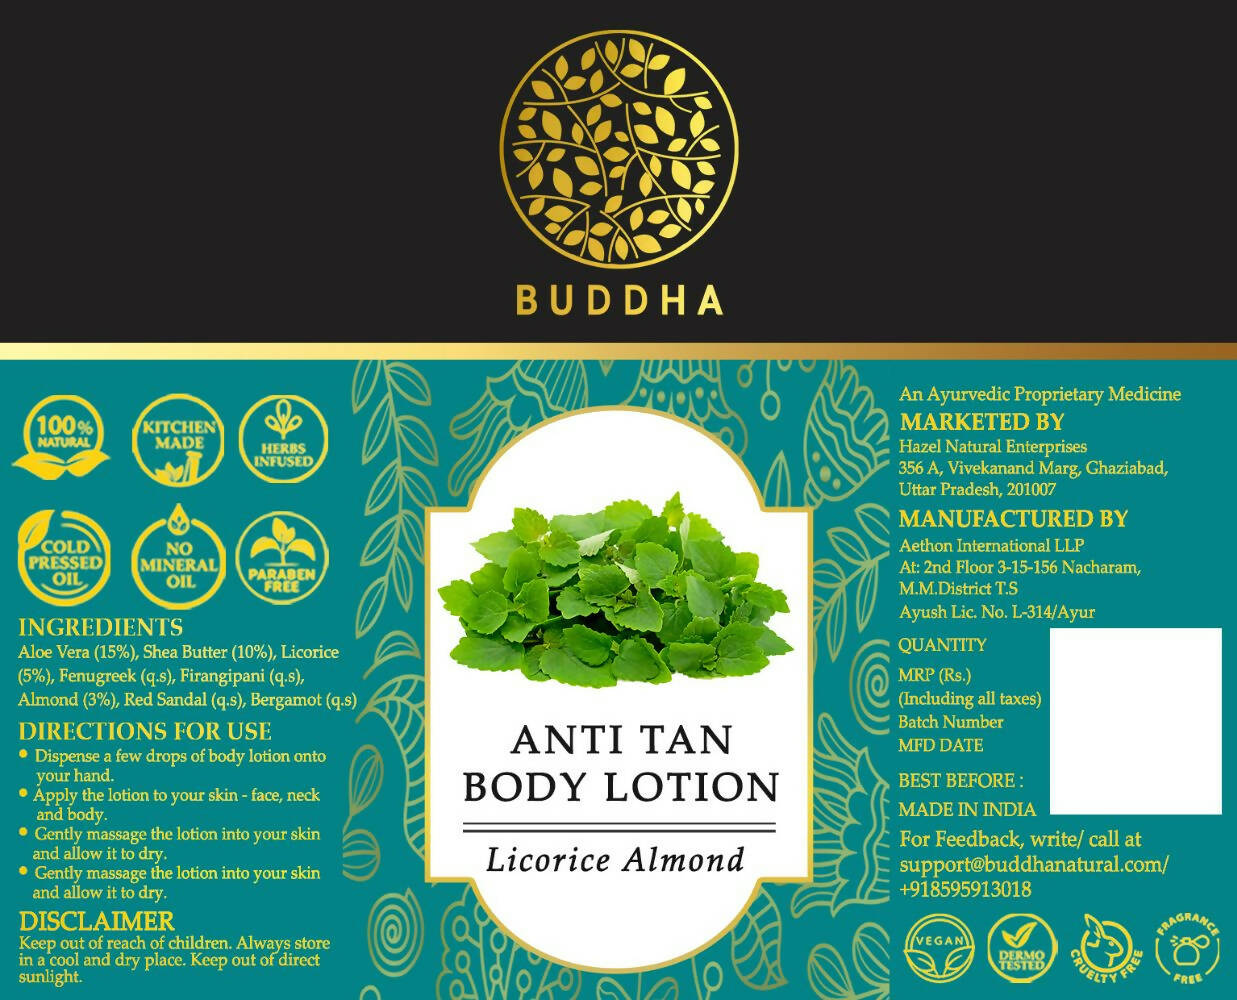 Buddha Natural Anti Tan Body Lotion - Distacart